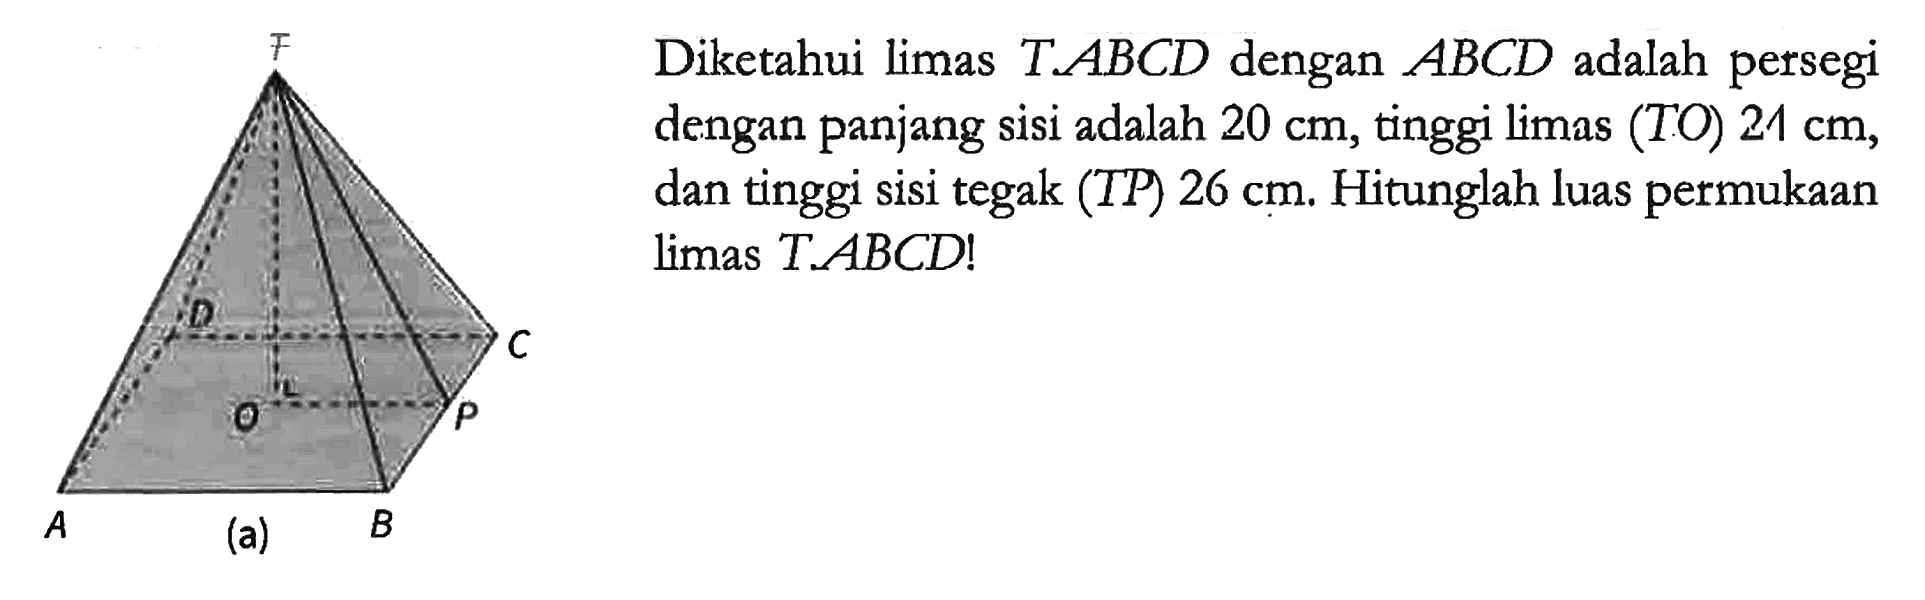 Diketahui limas T.ABCD dengan ABCD adalah persegi dengan panjang sisi adalah 20 cm, tinggi limas (TO) 24 cm, dan tinggi sisi tegak (TP) 26 cm. Hitunglah luas permukaan limas T.ABCD!
T A (a) B C D O P 